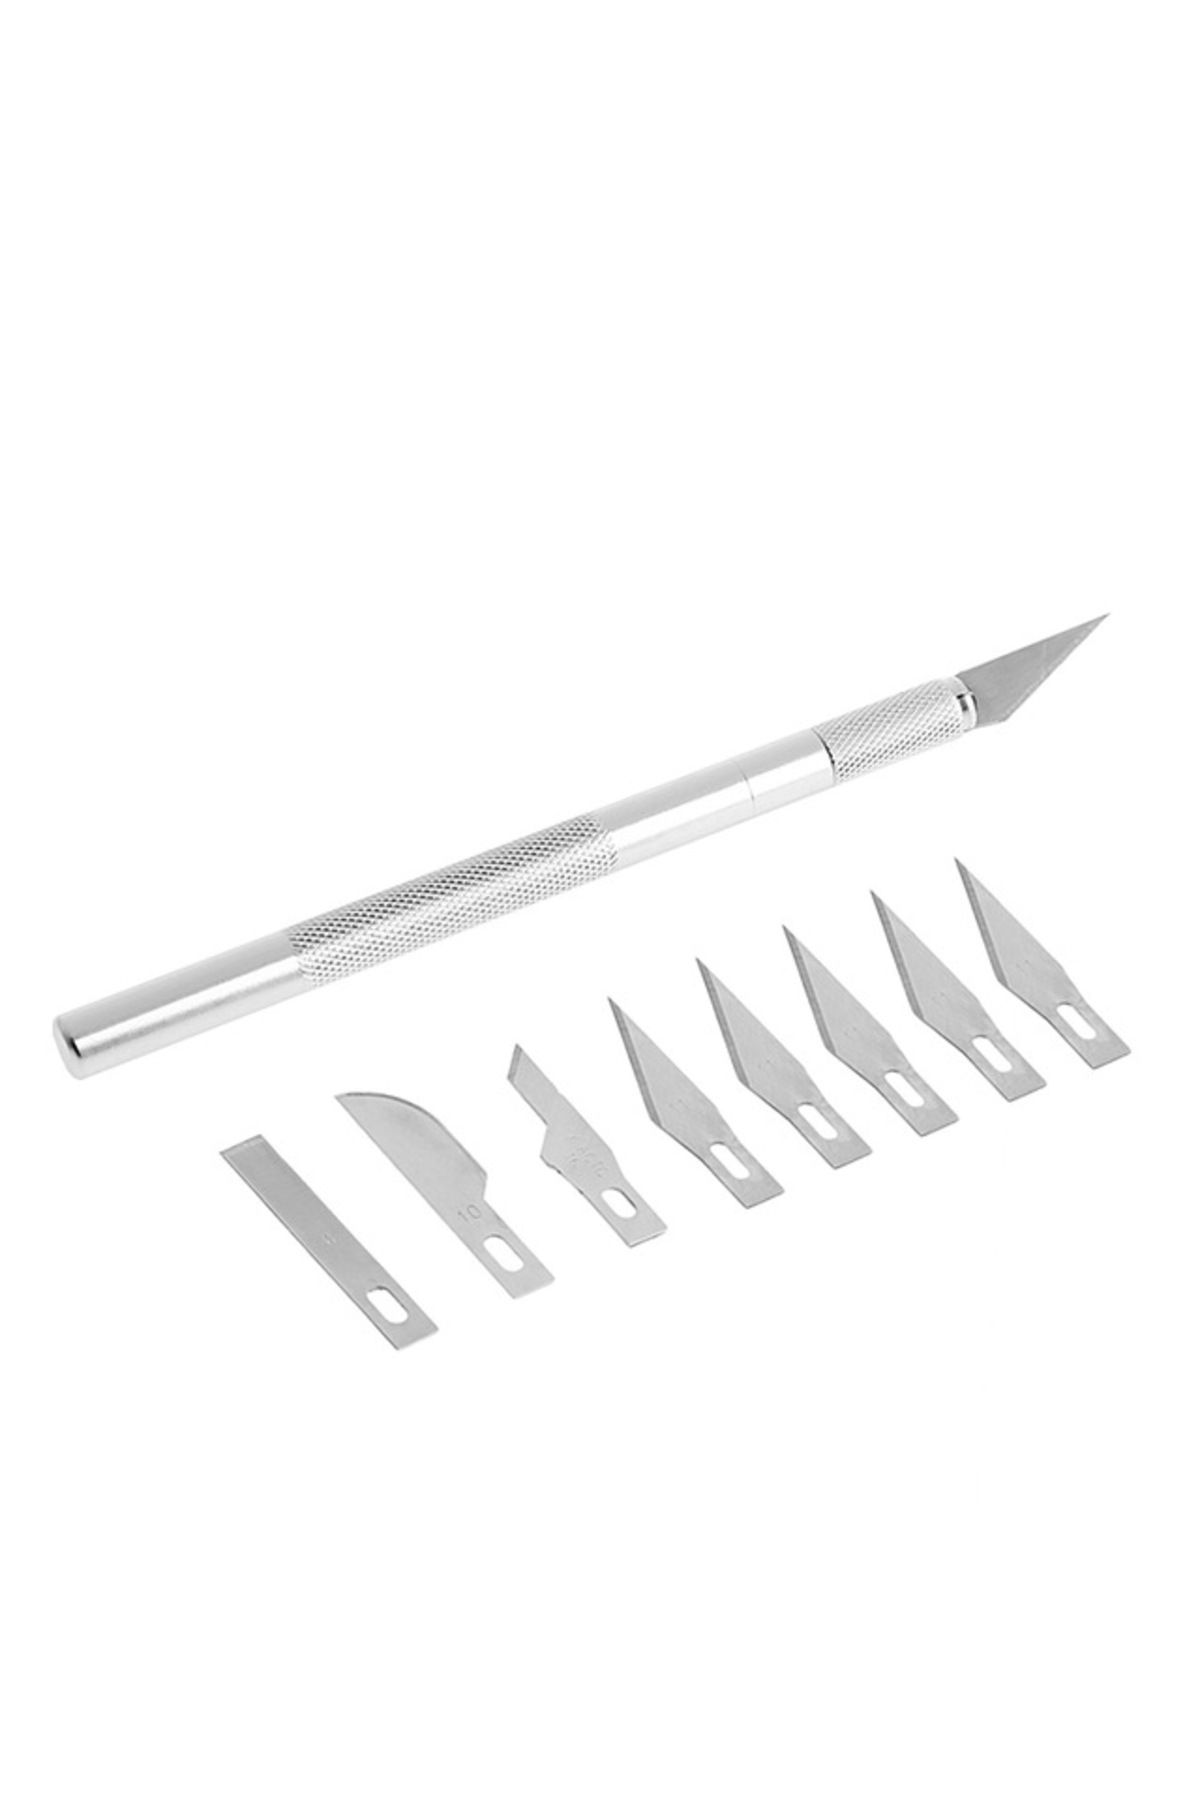 Müstesna Neşter Kalemi Takımı Ahşap Oyma Seti Aletleri 5+4 Farklı Bıçaklı Ahşap Oyma Bıçağı 4 Farklı Bıçak